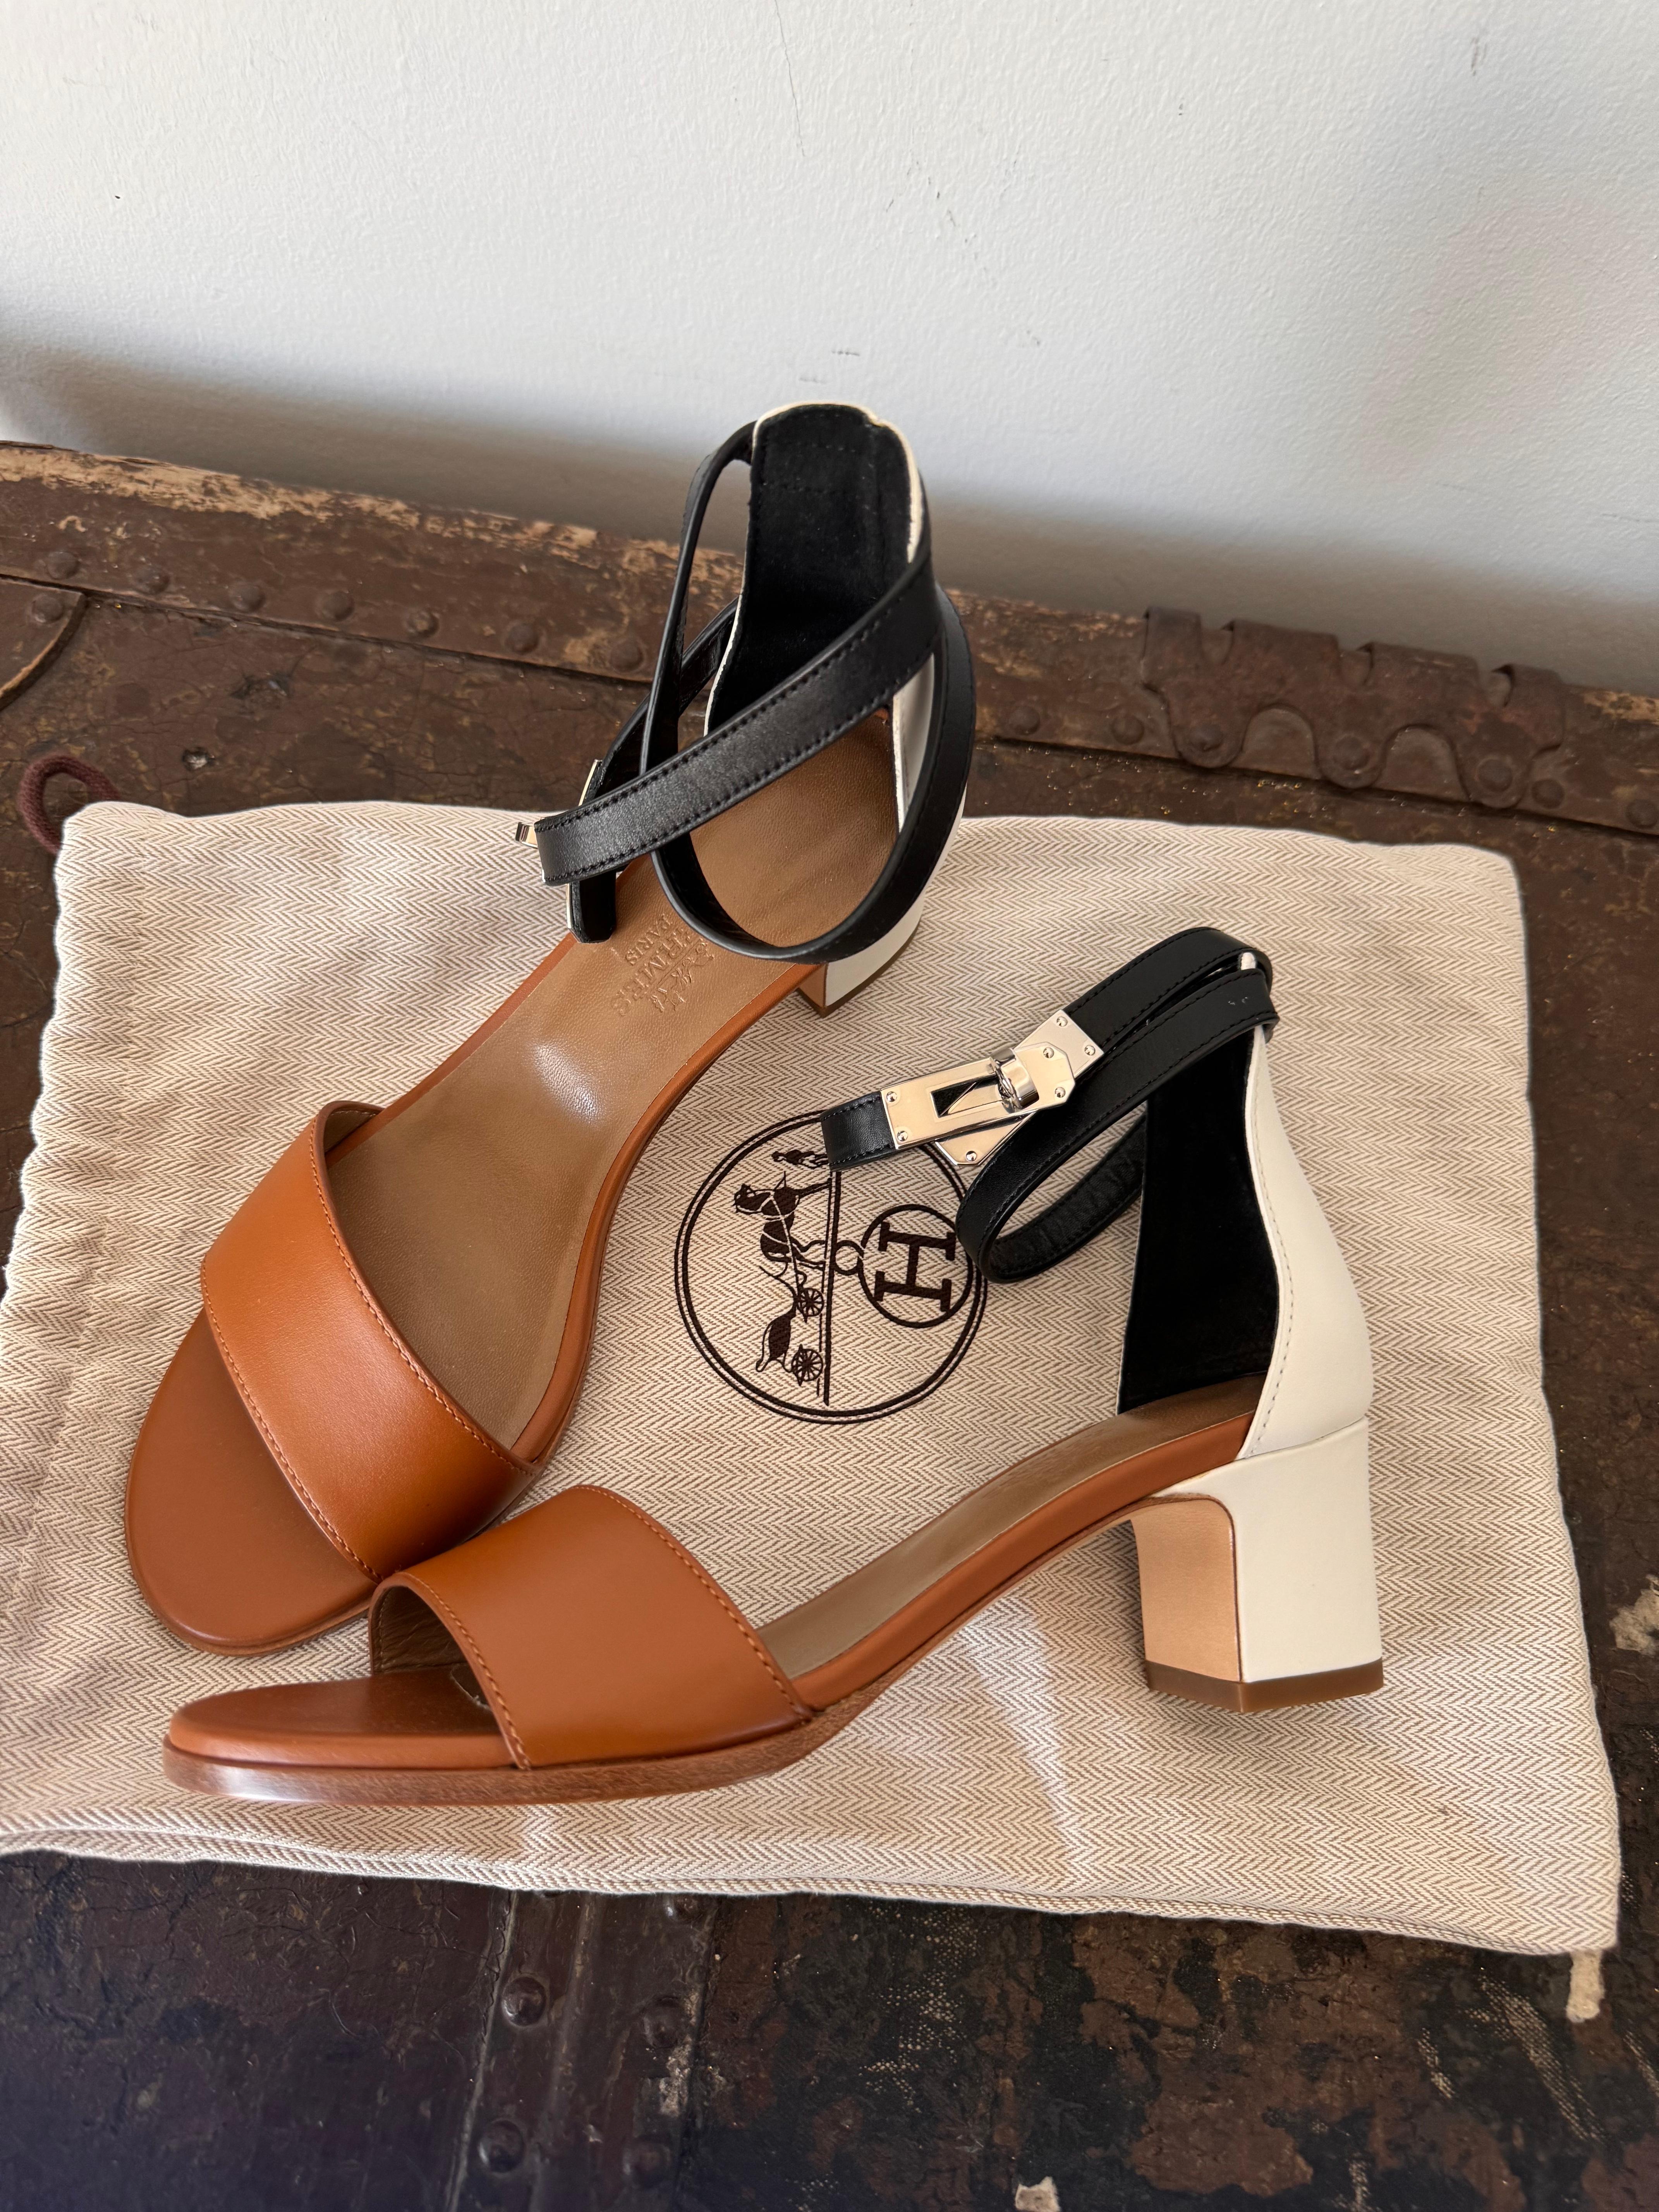 Rehaussez votre collection de chaussures avec la sandale Mahege d'Hermès, dans une palette de couleurs brunes et blanches saisissantes, accentuée par une bride de cheville noire sophistiquée et le détail emblématique de la serrure Kelly. Cette